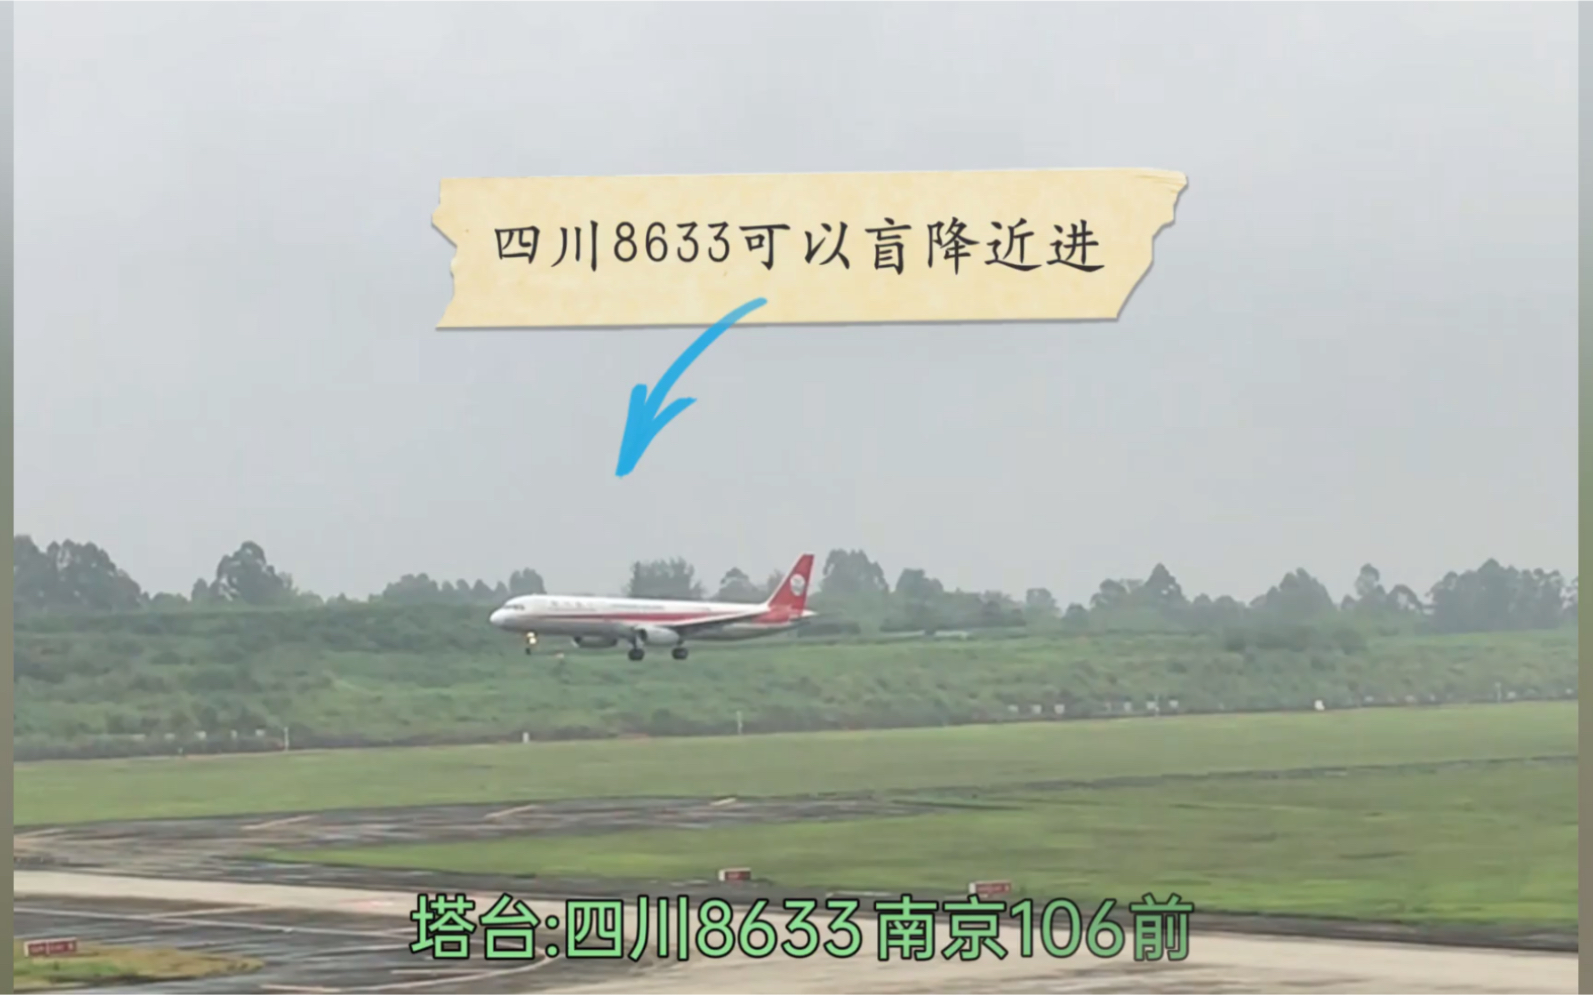 四川8633降落图片